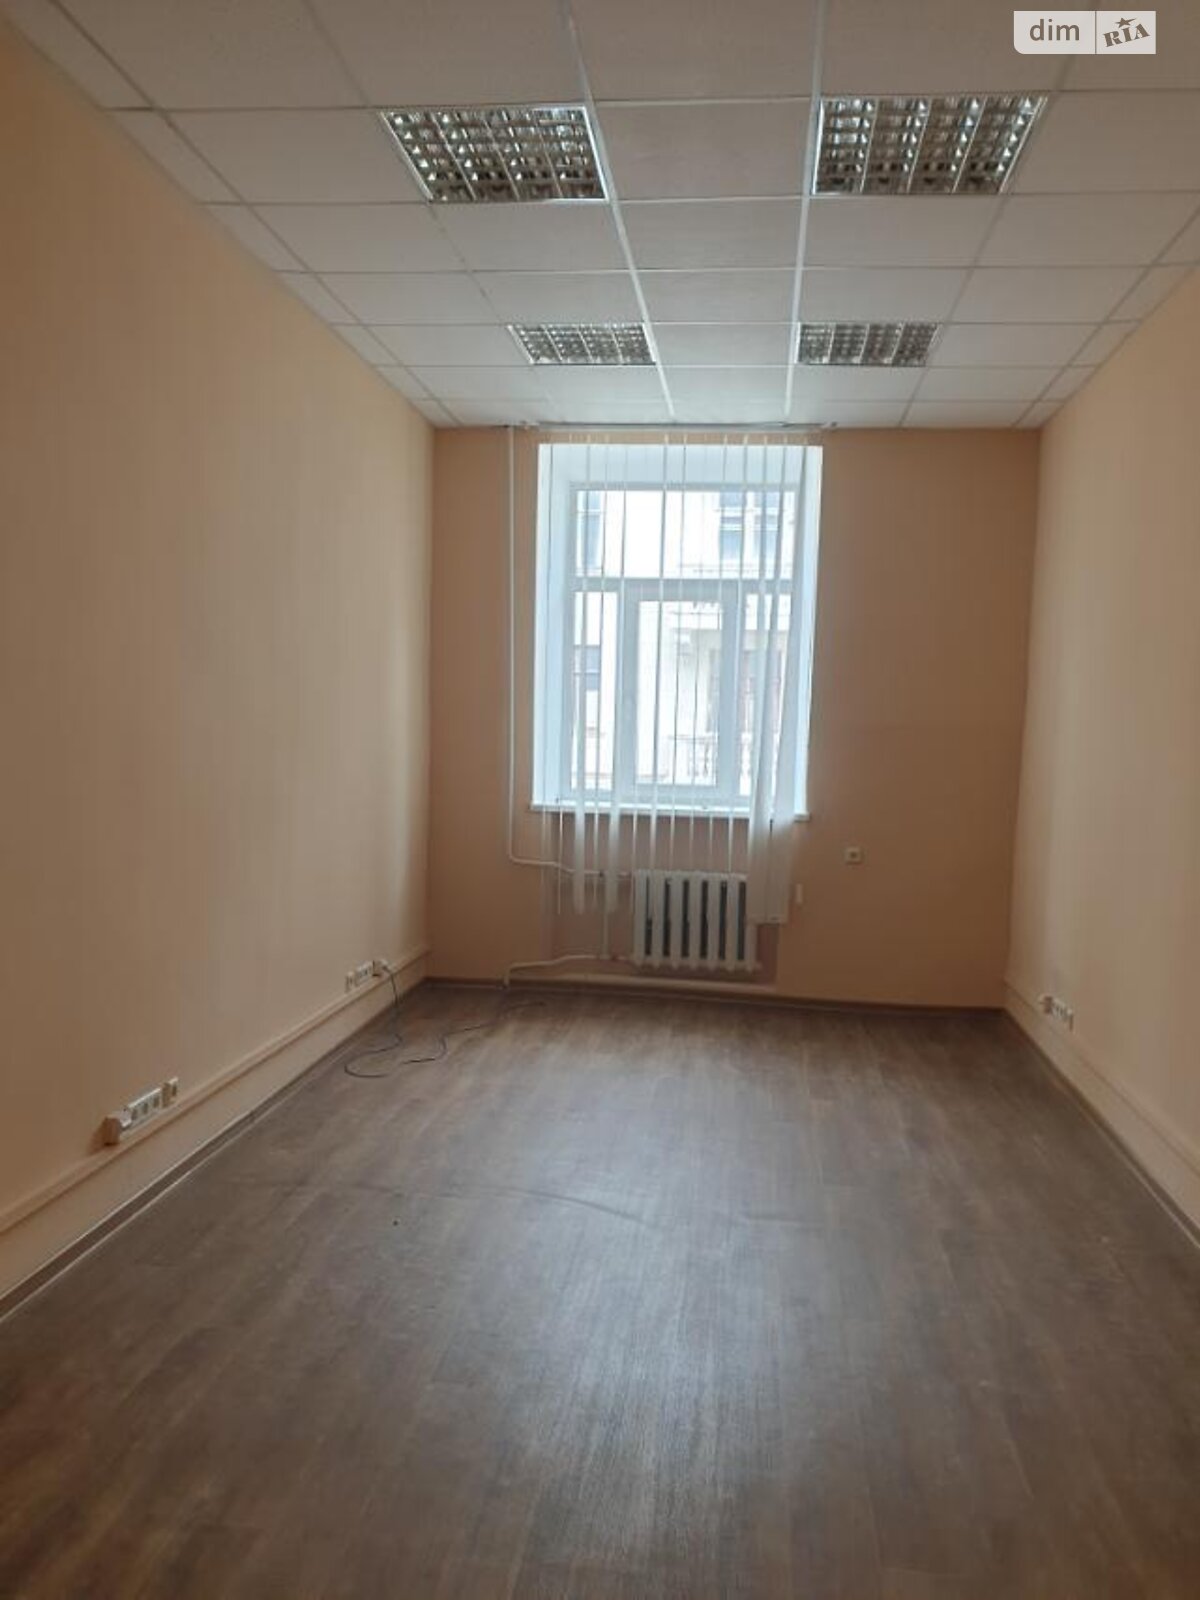 Аренда офисного помещения в Харькове, Марьяненко переулок 4, помещений - 2, этаж - 3 фото 1